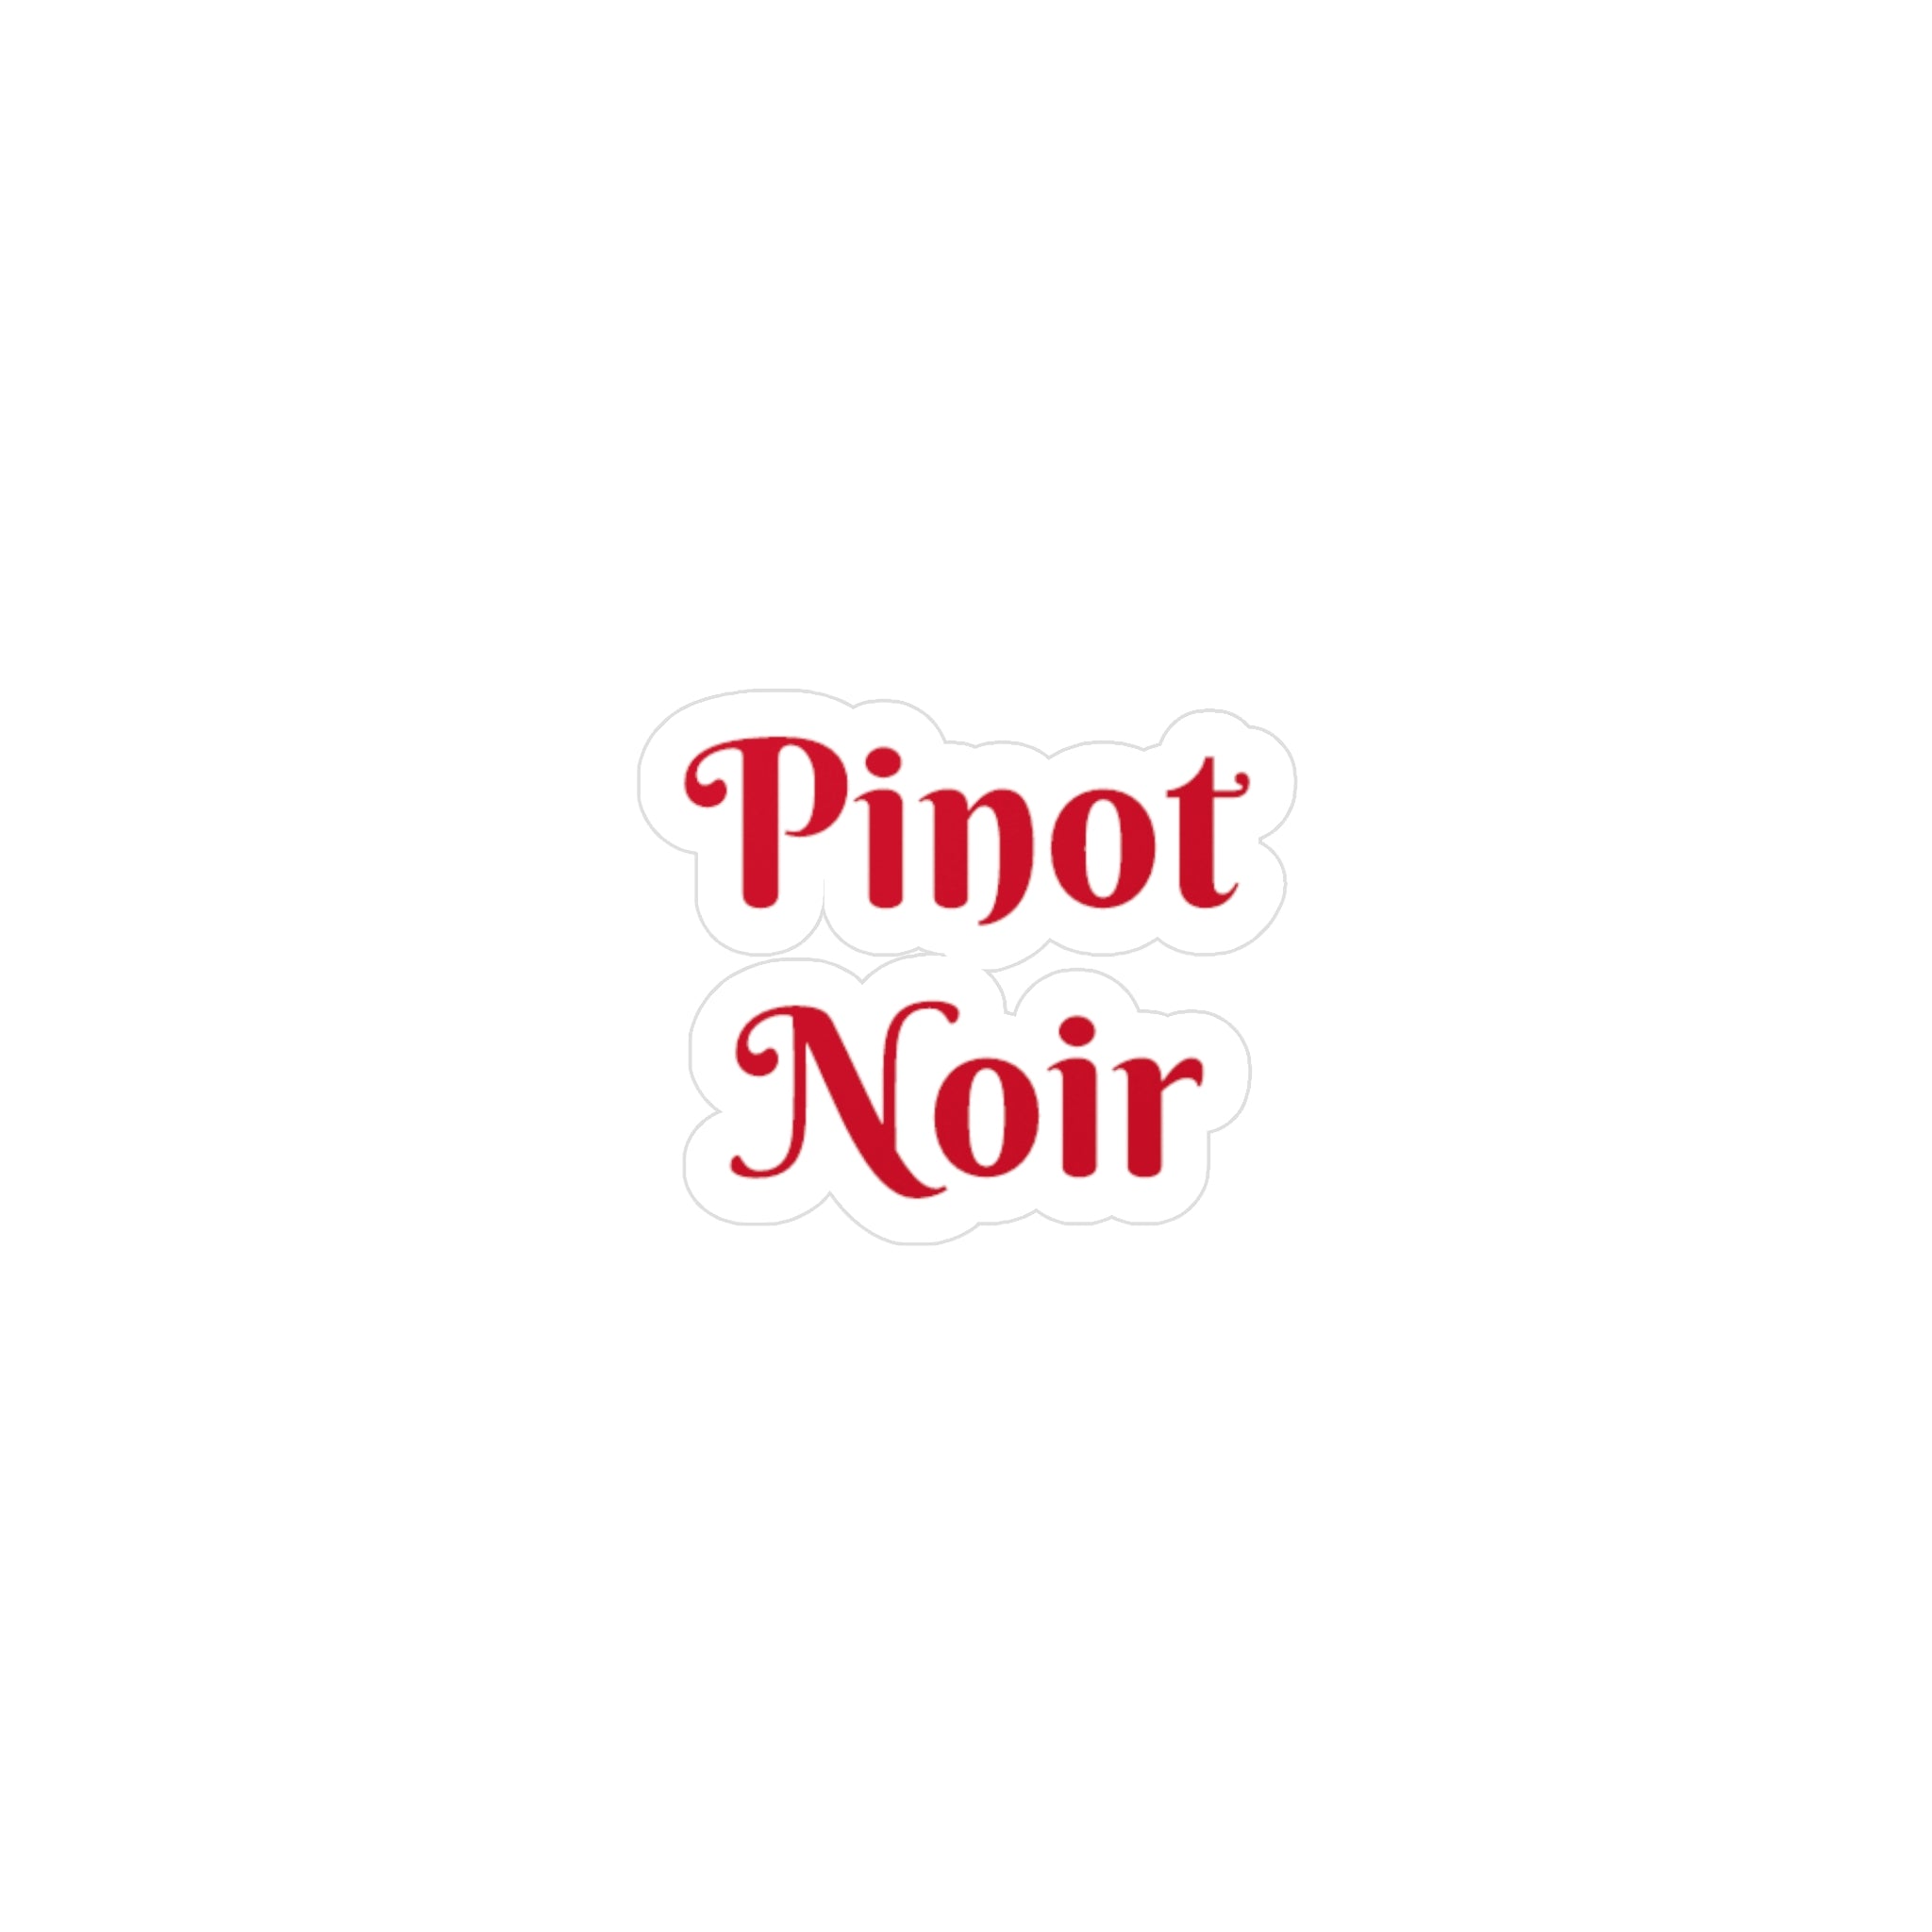 Pinot Noir Kiss-Cut Vinyl Decals